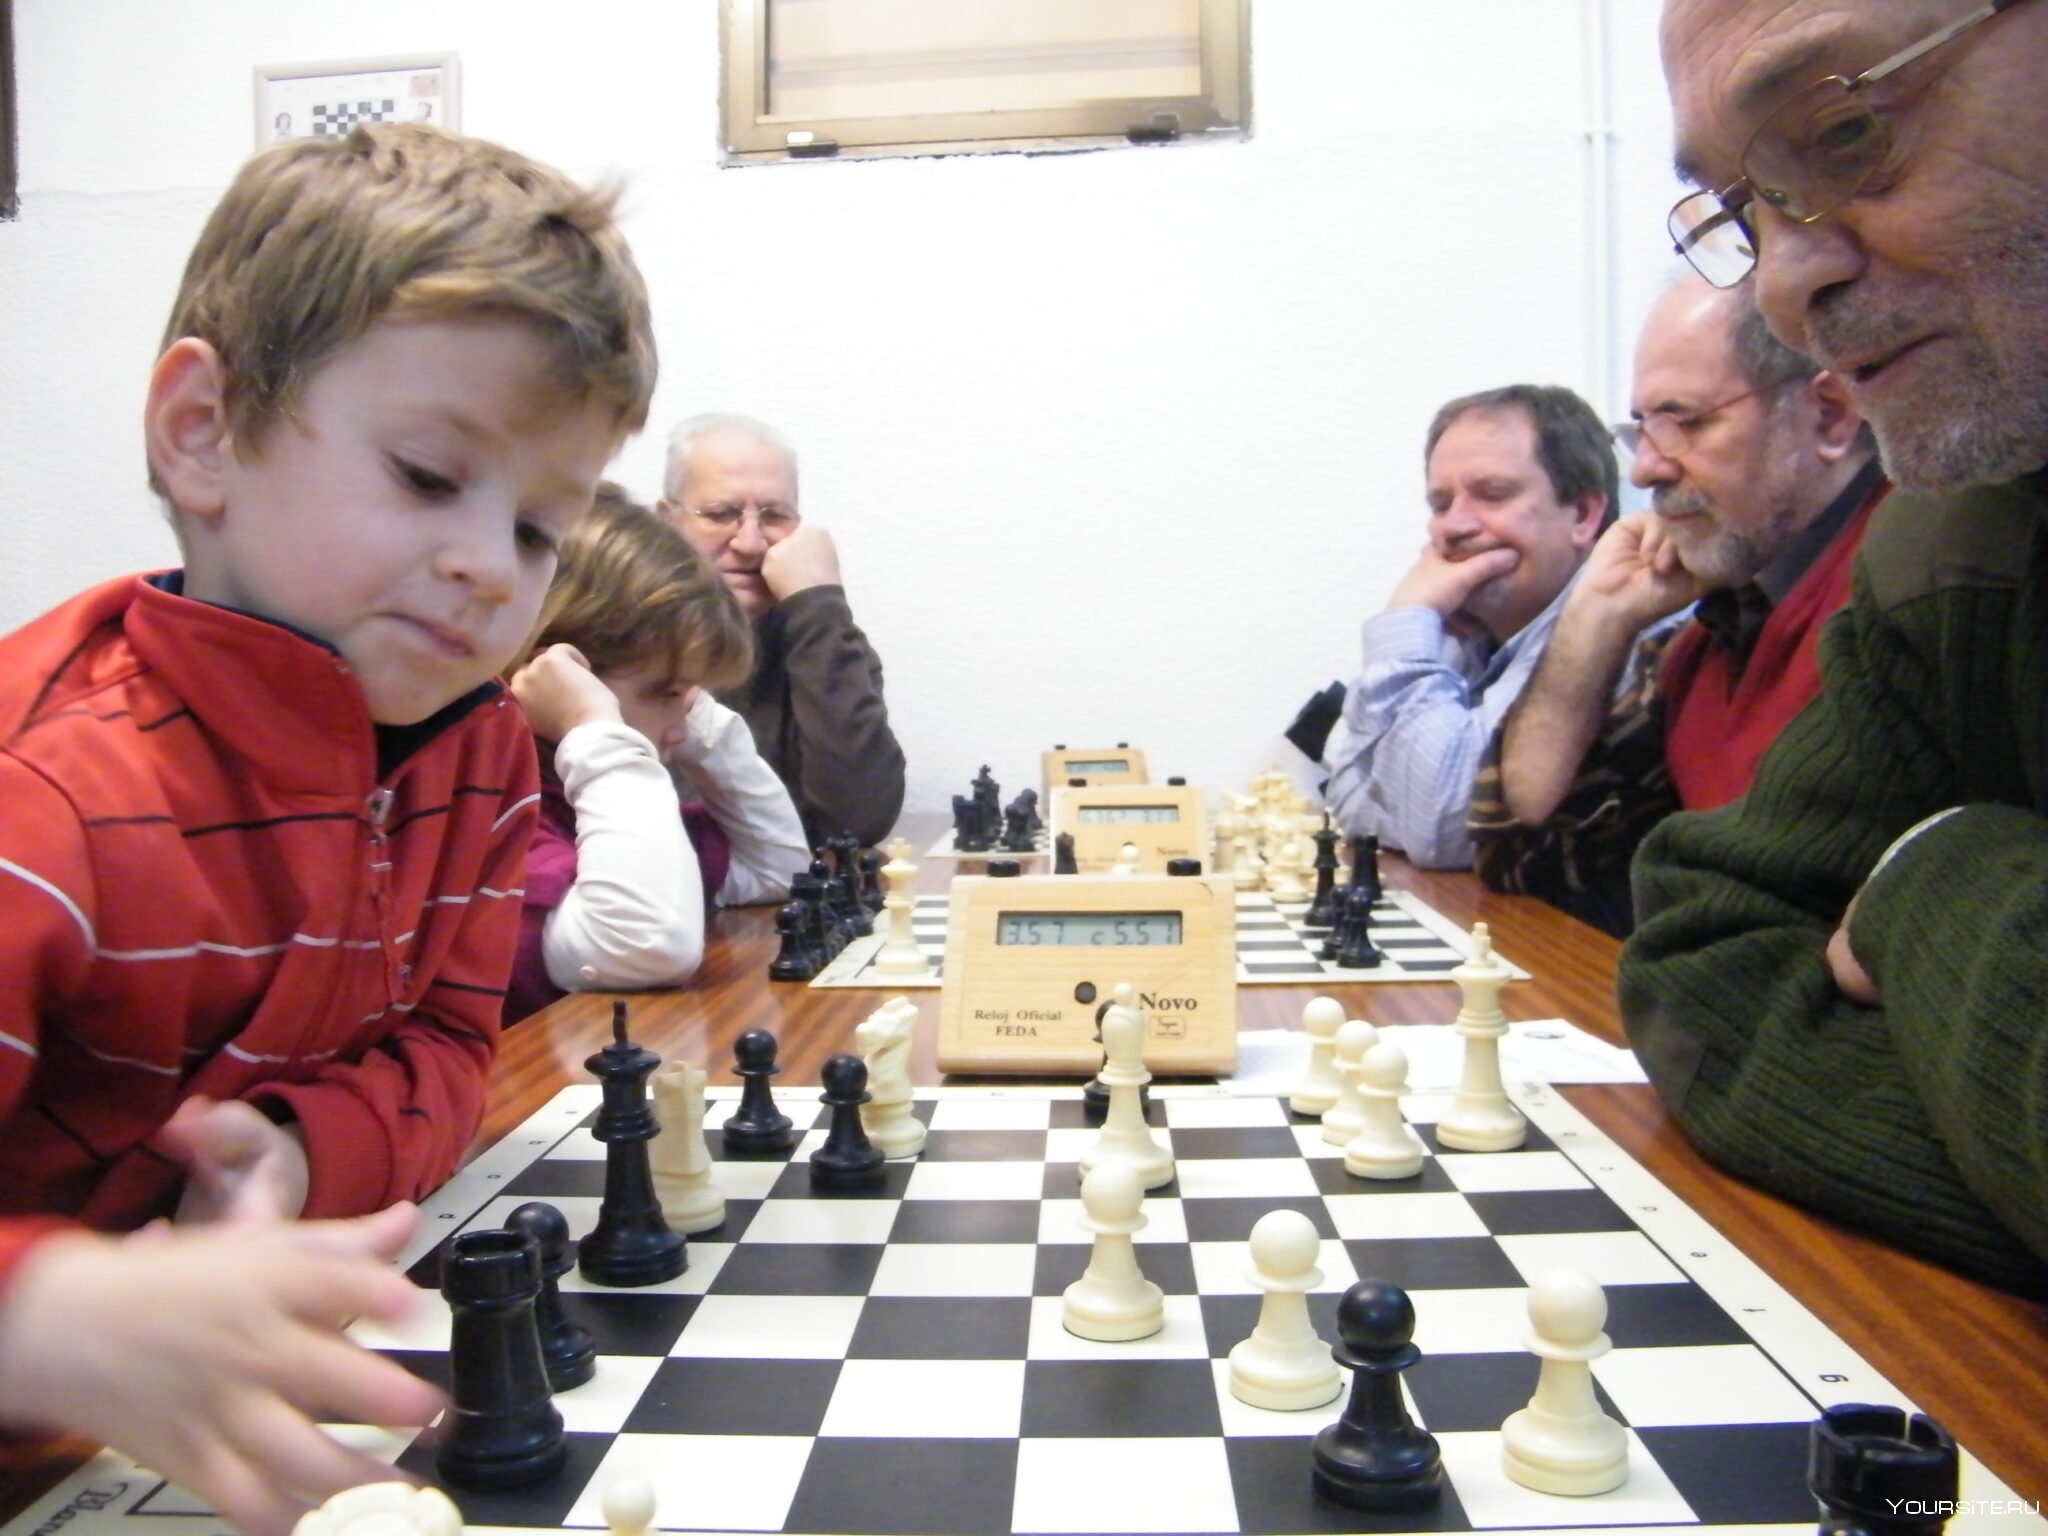 Шахматы играть с людьми со всего света